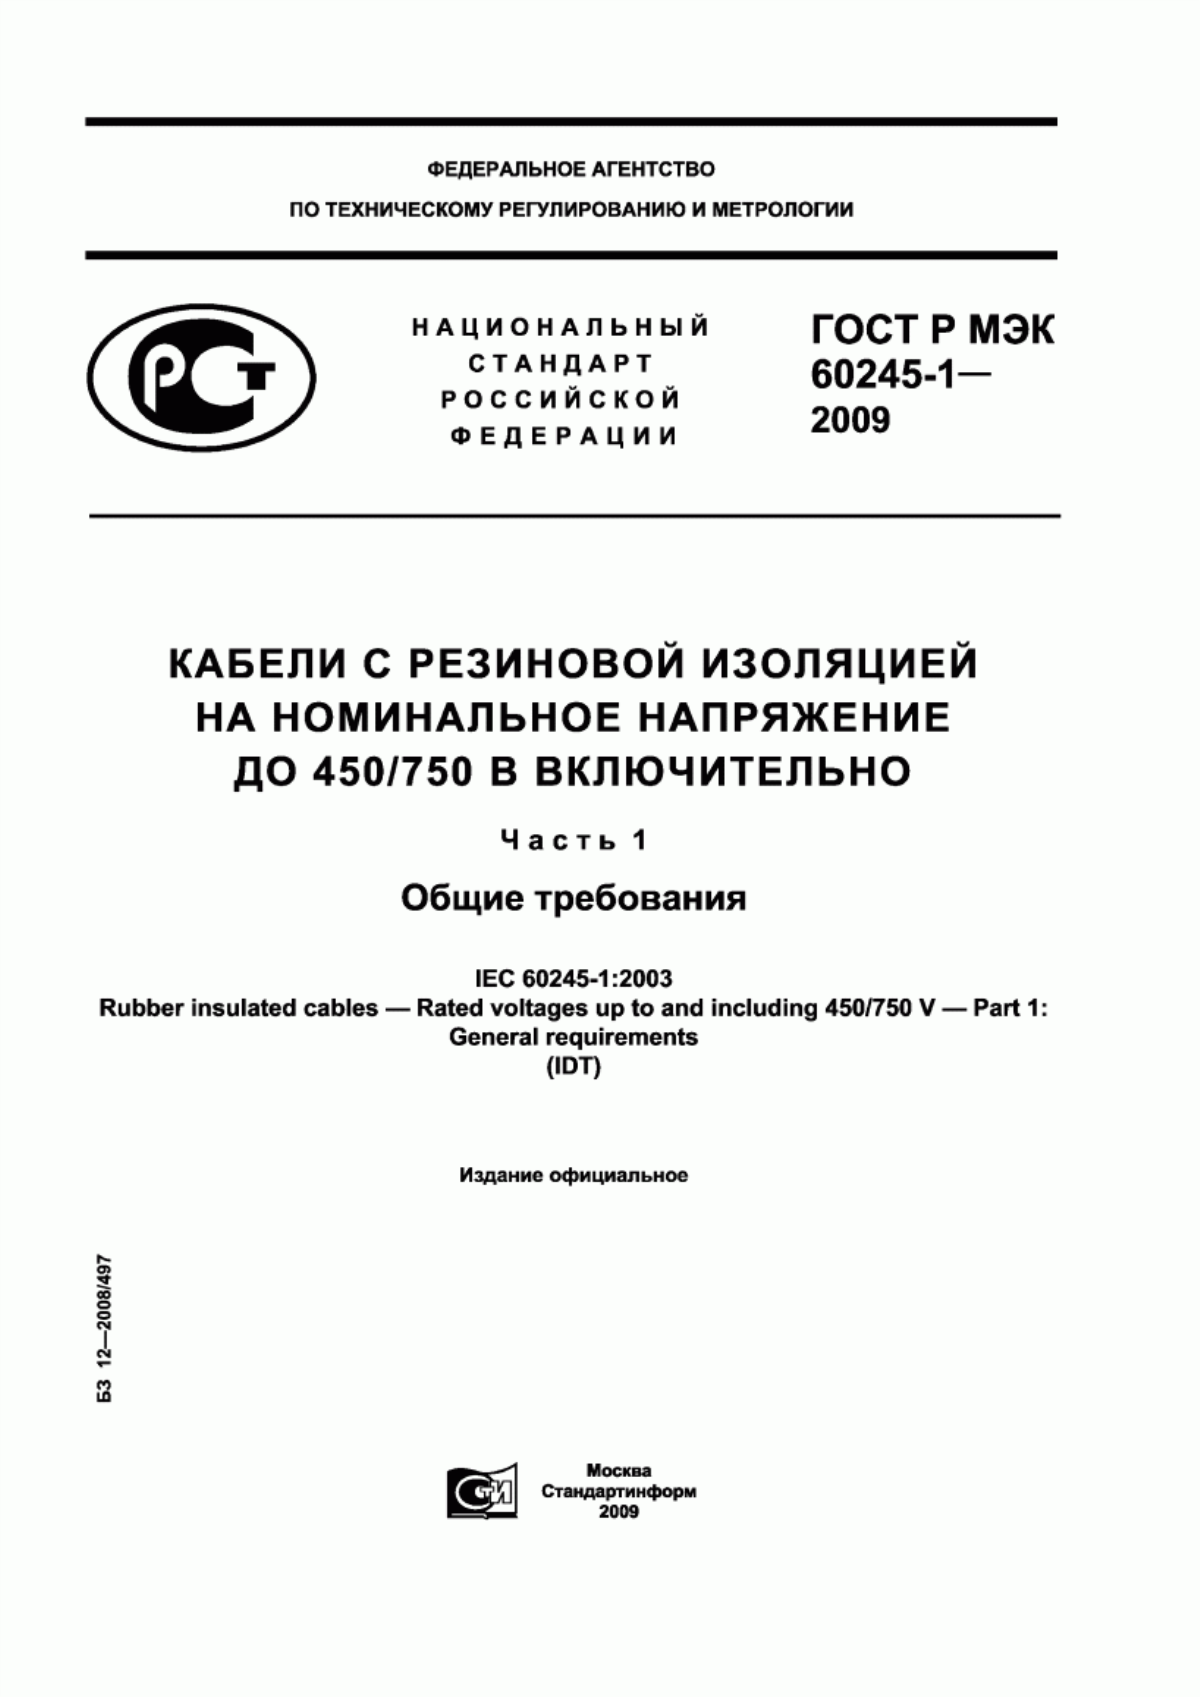 ГОСТ Р МЭК 60245-1-2009 Кабели с резиновой изоляцией на номинальное напряжение до 450/750 В включительно. Часть 1. Общие требования